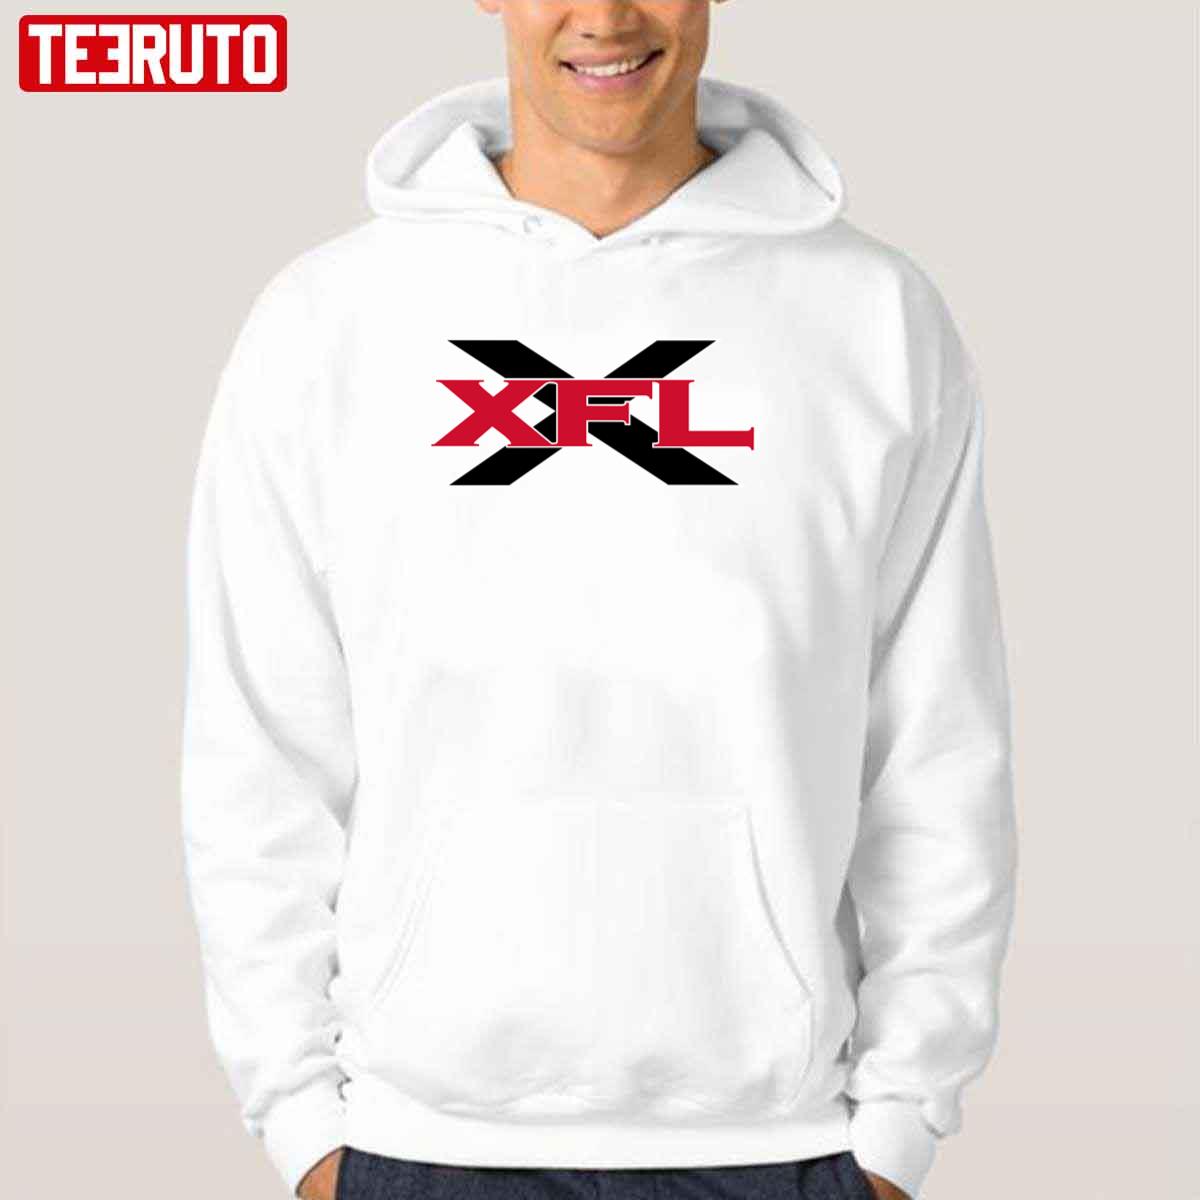 Xfl Old Logo Unisex T-Shirt